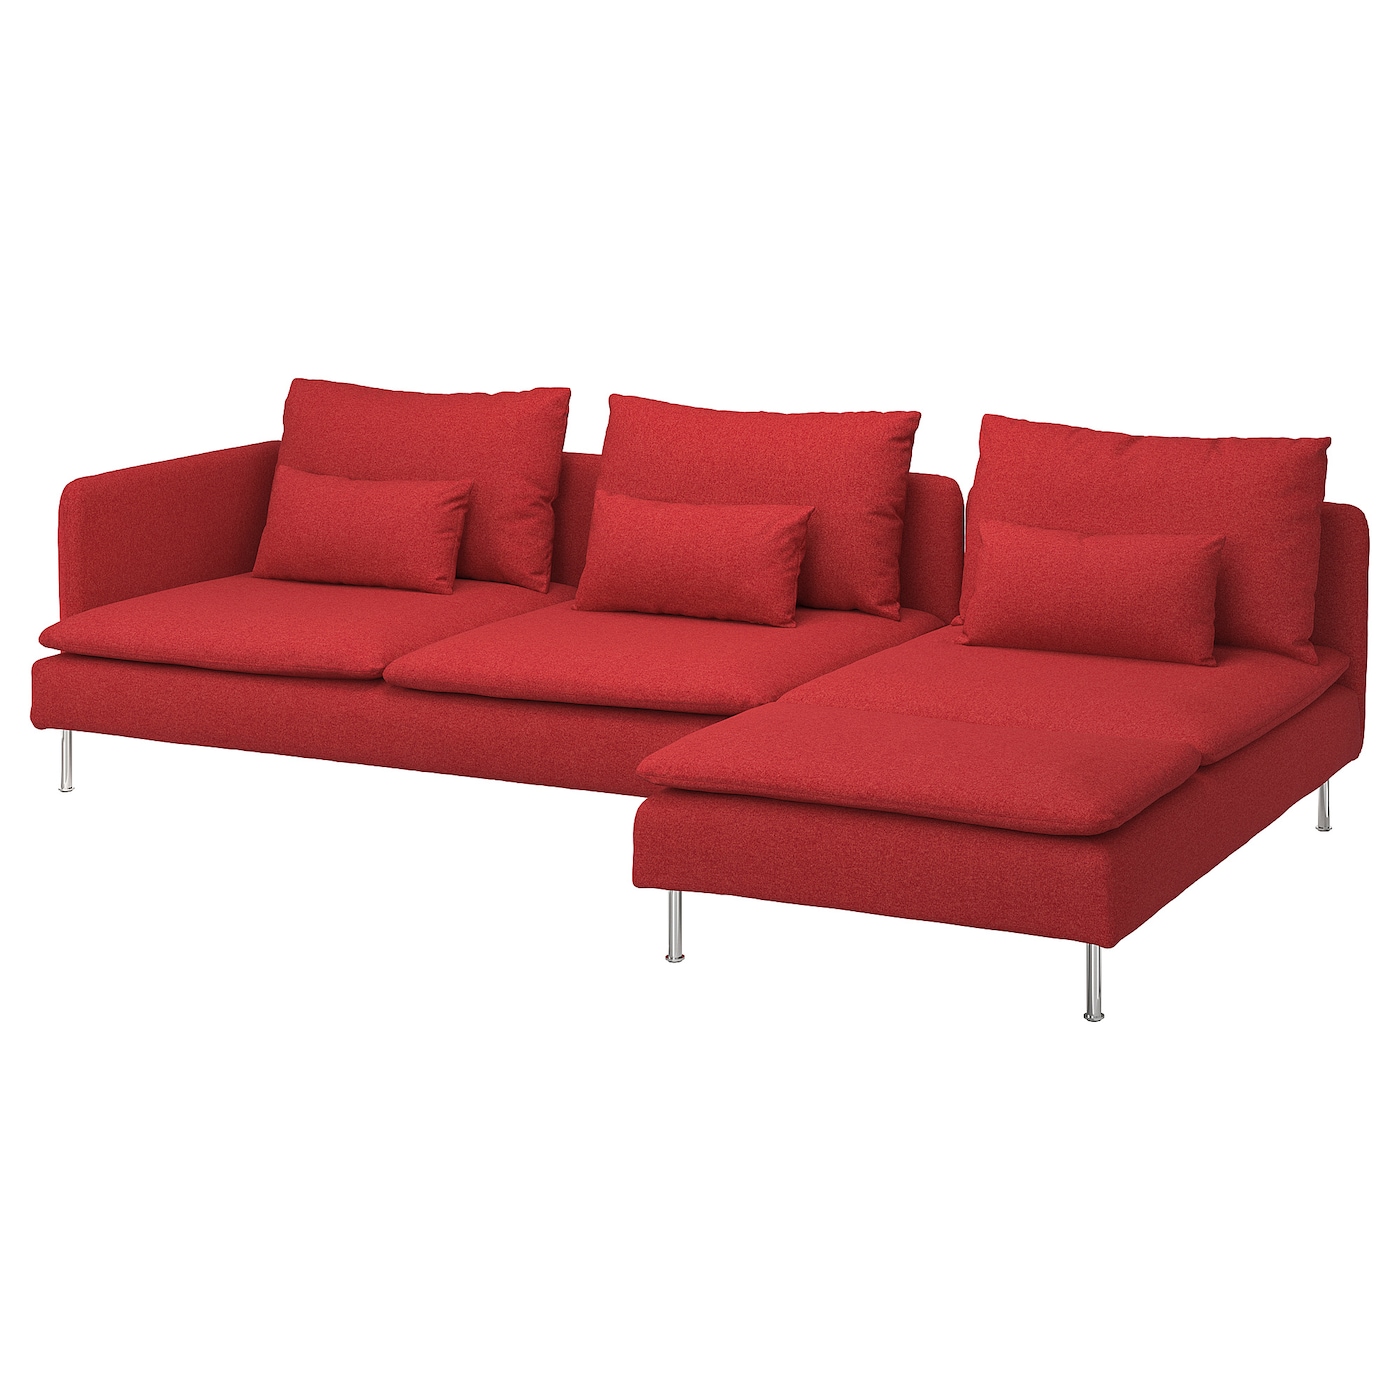 СЁДЕРХАМН 4-местный диван + диван, створка Тонеруд/красный SODERHAMN IKEA диван куба раскладной сканди 11